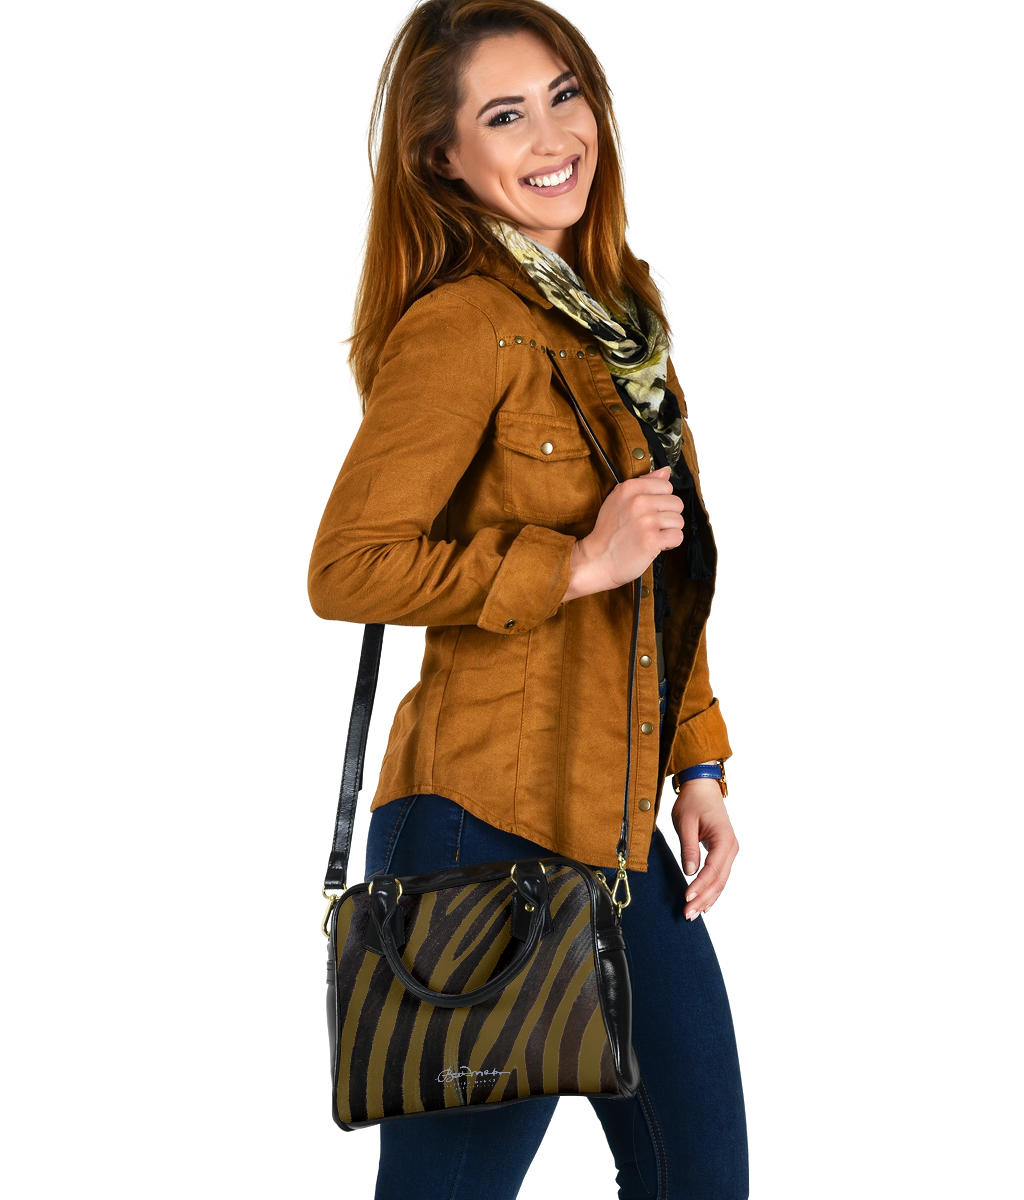 Wild (select color) Zebra Hand Bag w Shoulder Strap